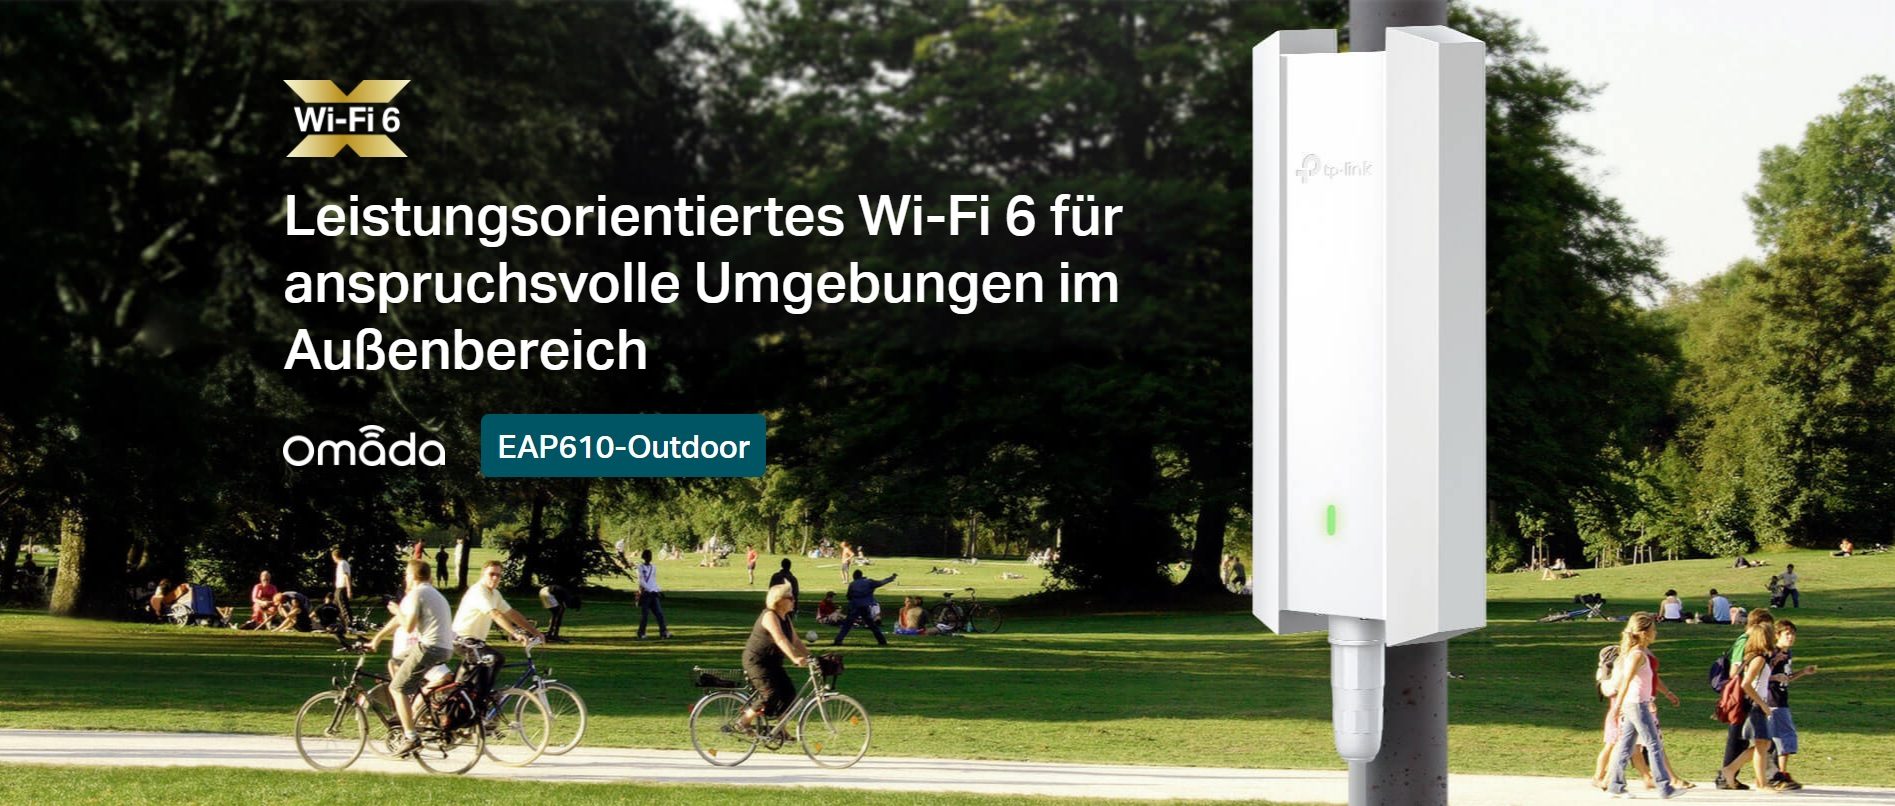 Leistungsorientiertes Wi-Fi 6